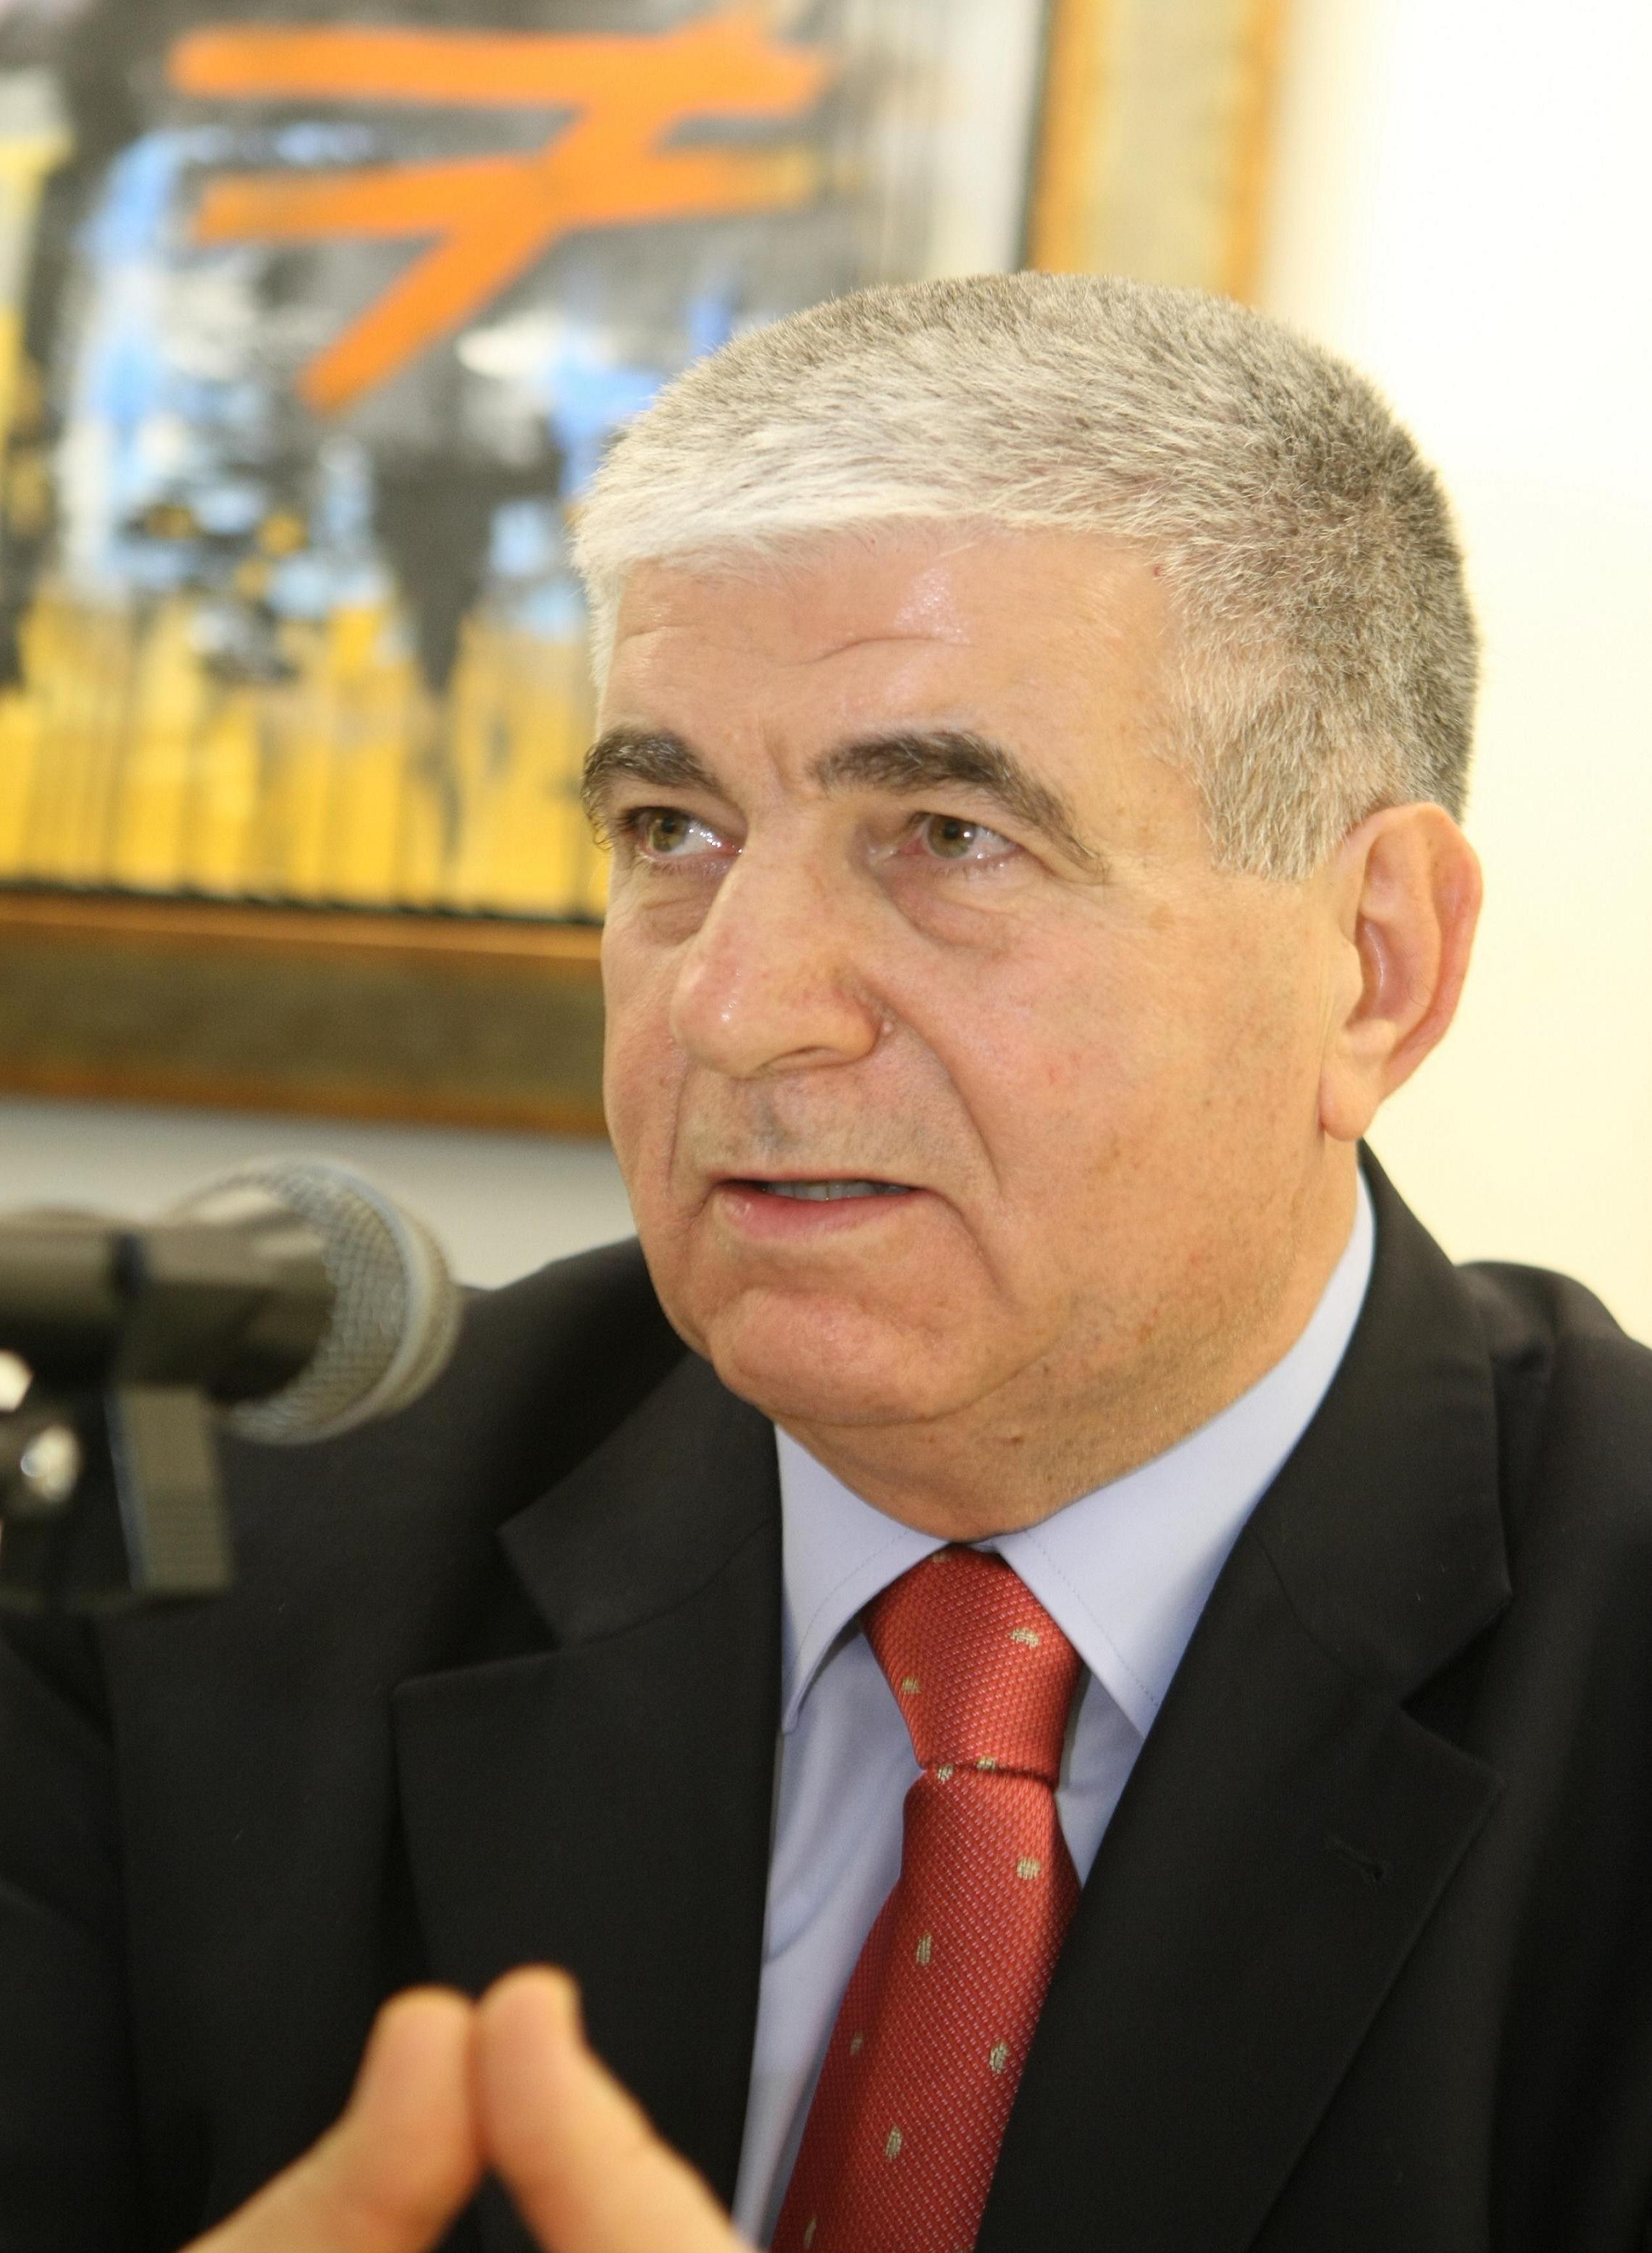 Σπύρος Κουζινόπουλος:”Ολόθερμη υποστήριξη στον αγώνα για απομάκρυνση των κεραιών”